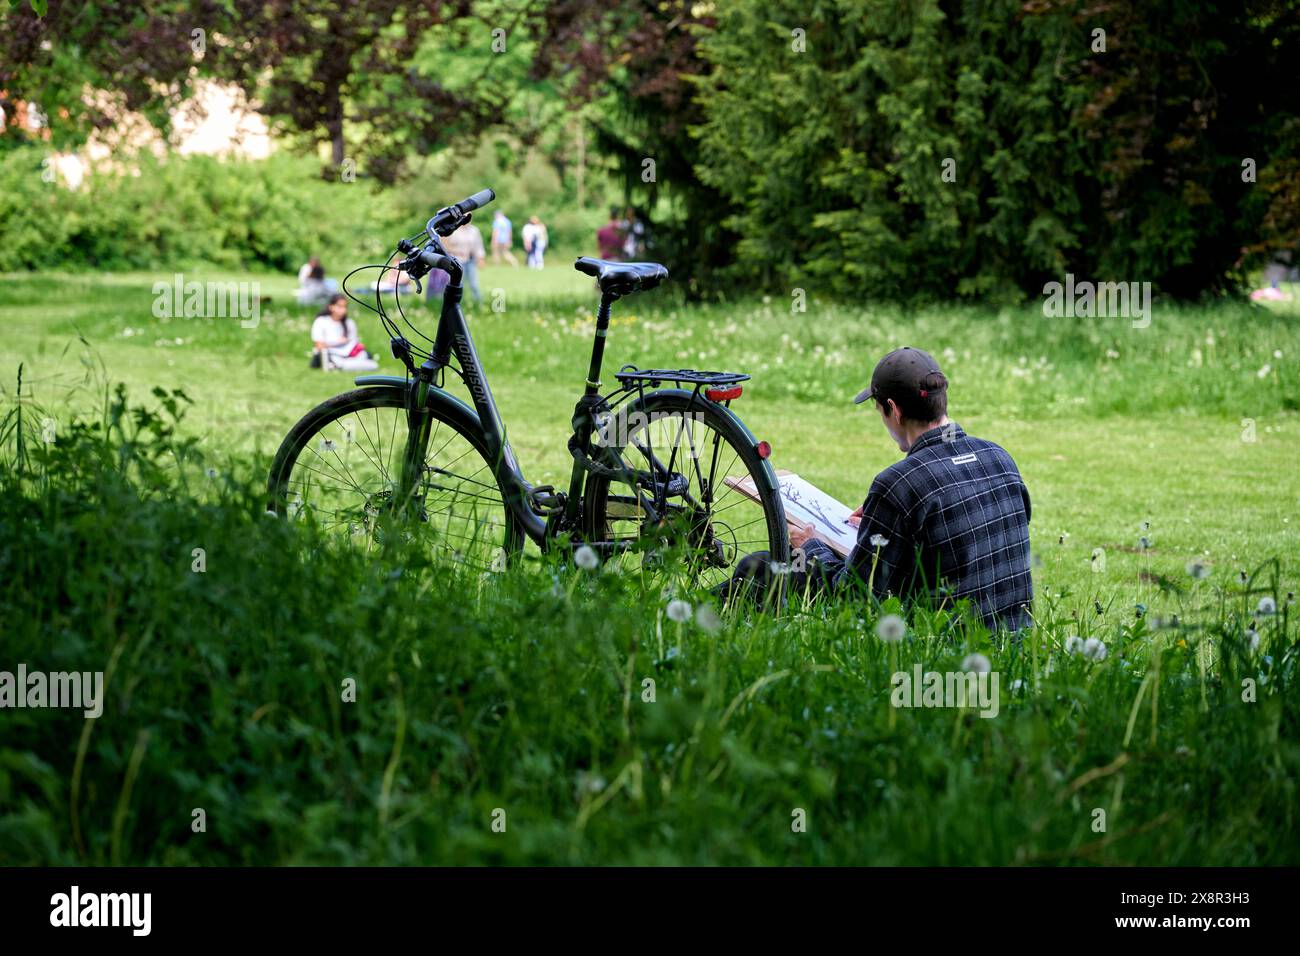 Ein Student sitzt neben seinem Fahrrad im Park an der ILM und zeichnet. Veröffentlichungen nur für redaktionelle Zwecke. Foto: IMAGO/FotoPrensa Foto Stock